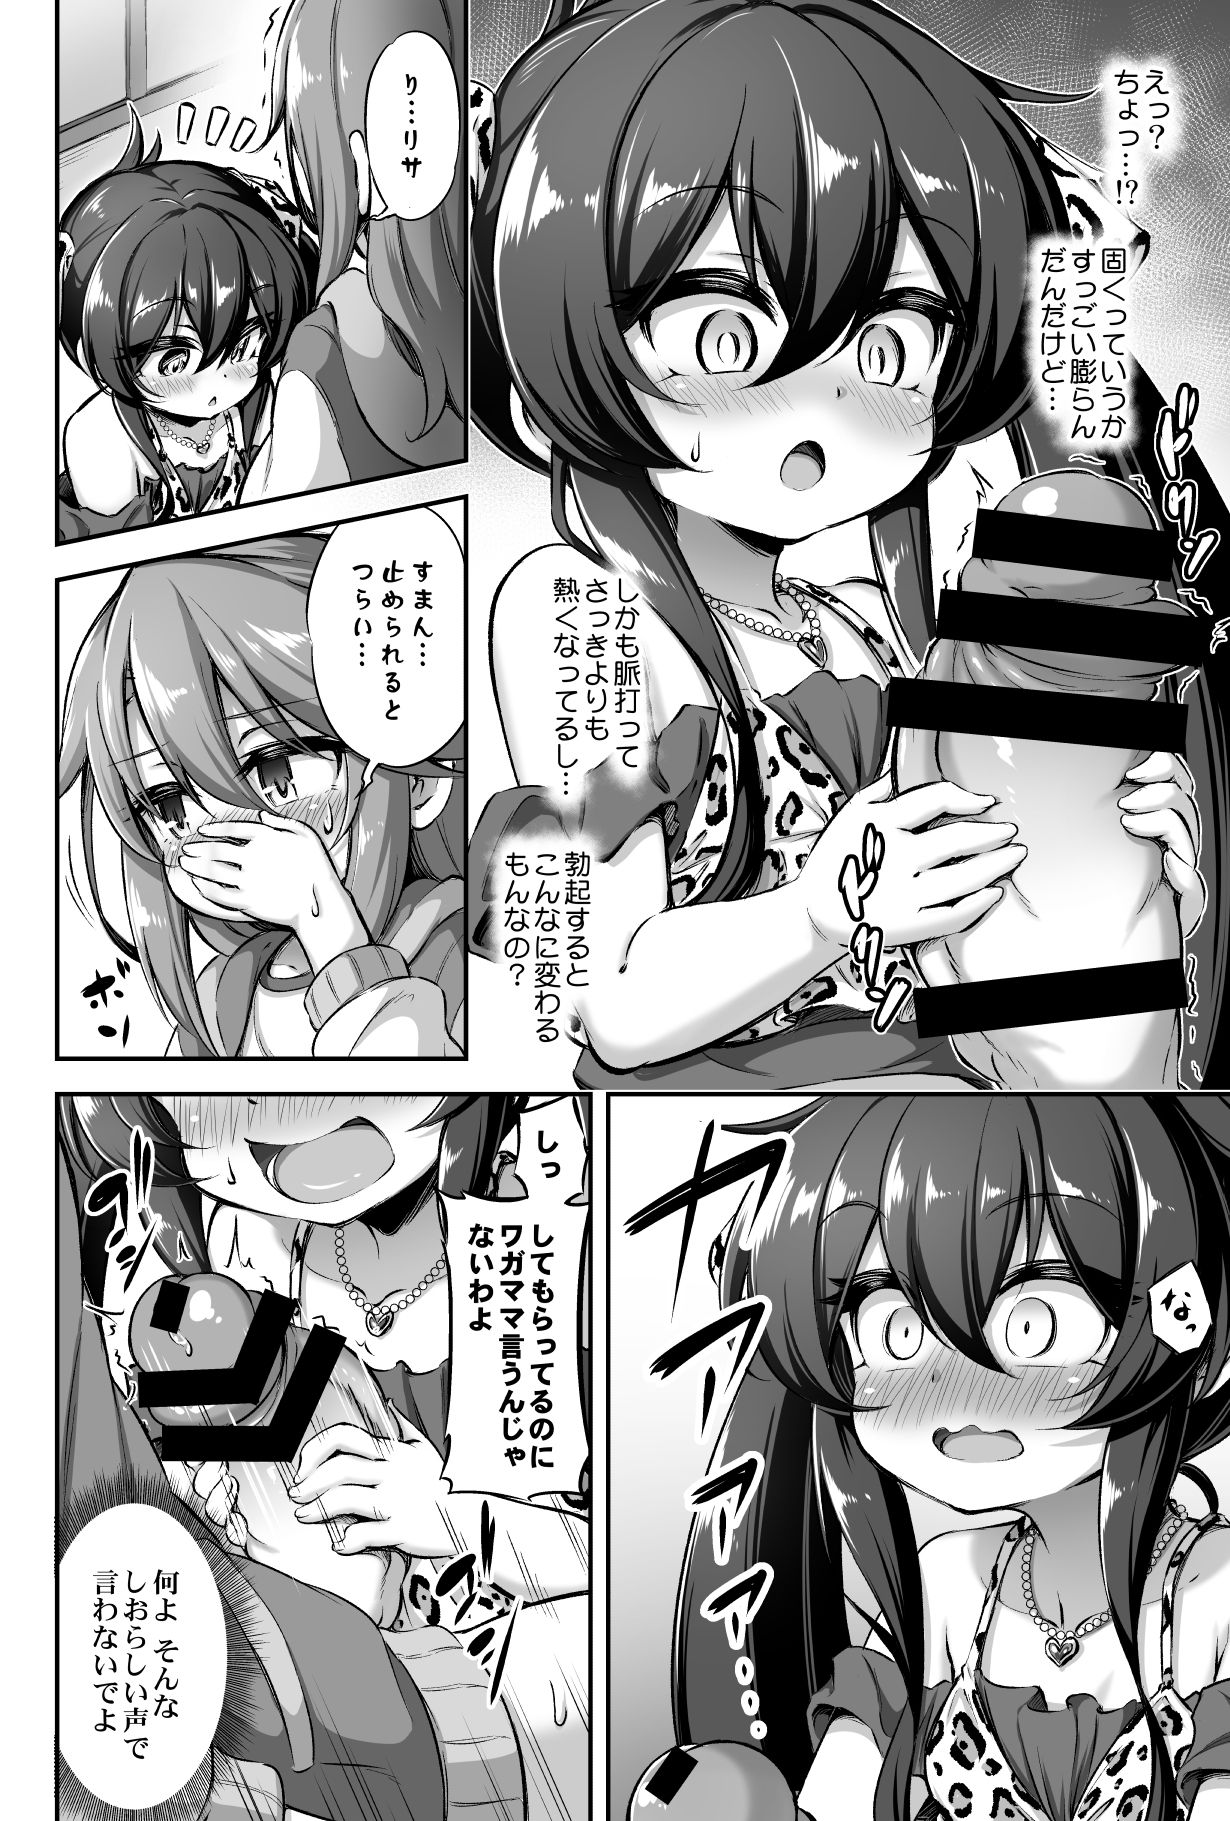 [Achromic (Musouduki)] Loli & Futa Vol. 13 (THE IDOLM@STER CINDERELLA GIRLS) [Digital] page 7 full